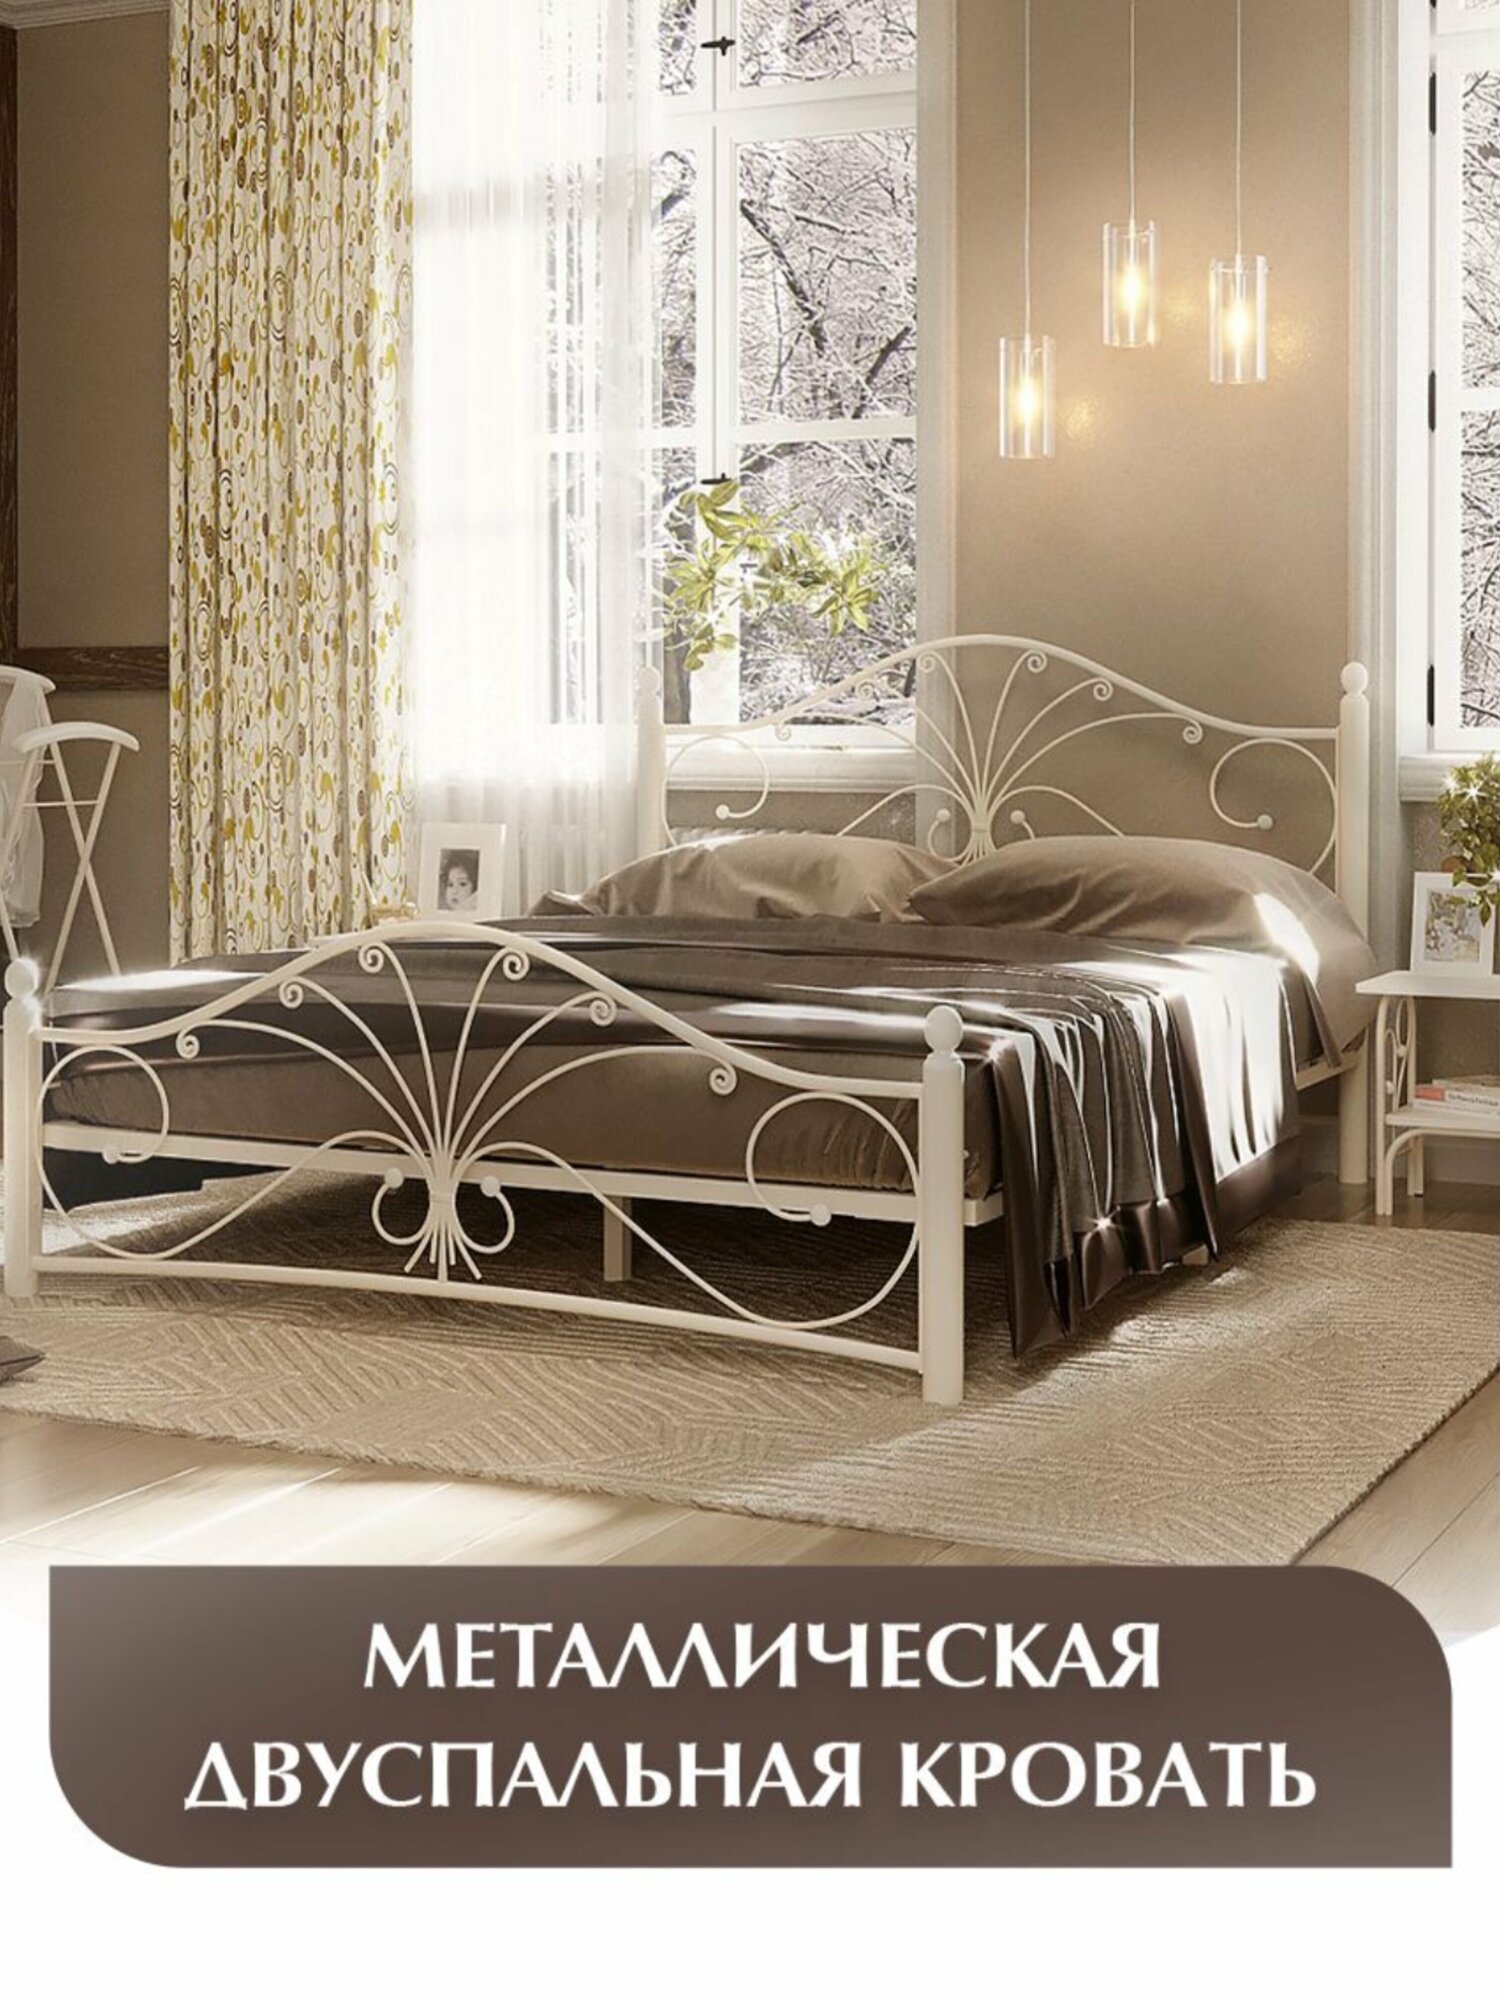 Двуспальная кровать, кремово-белая, железная, металлическая, 140х200 см